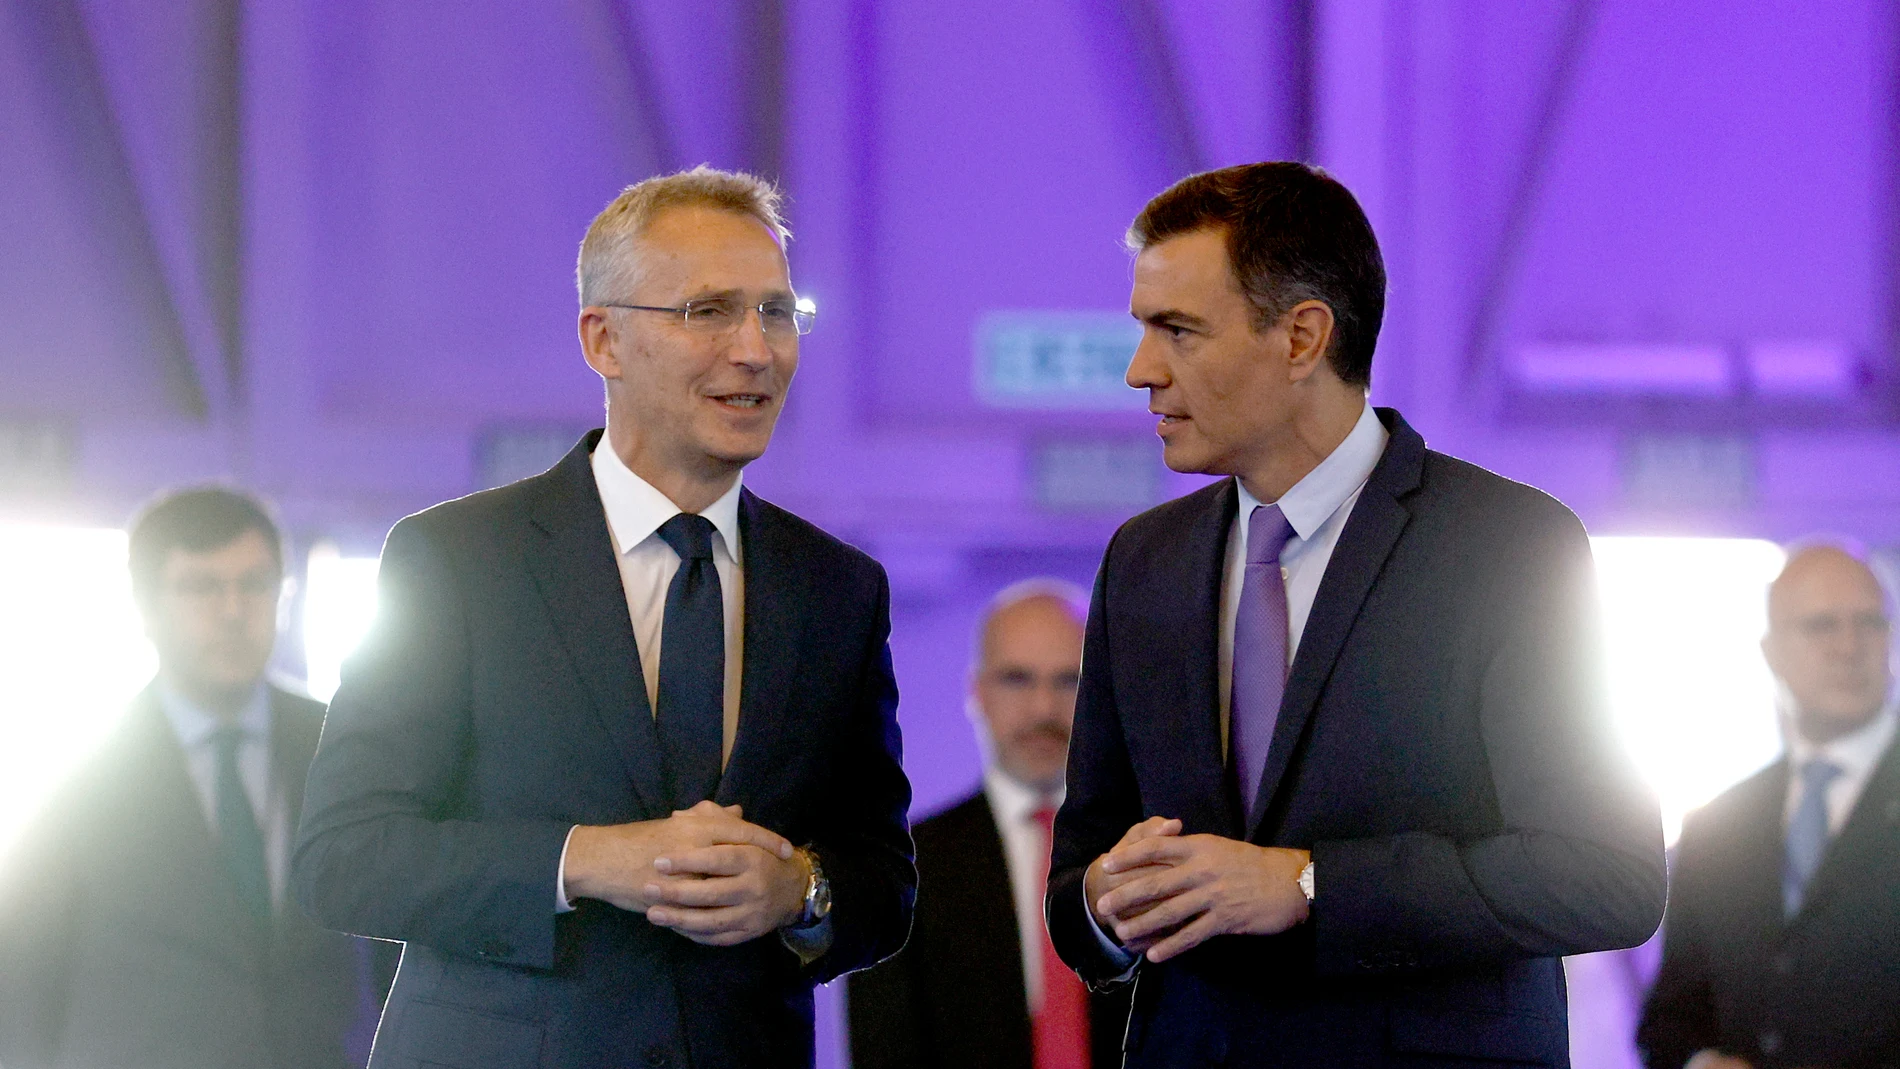 Jens Stoltenberg y Pedro Sánchez dialogan en IFEMA durante la cumbre de la OTAN